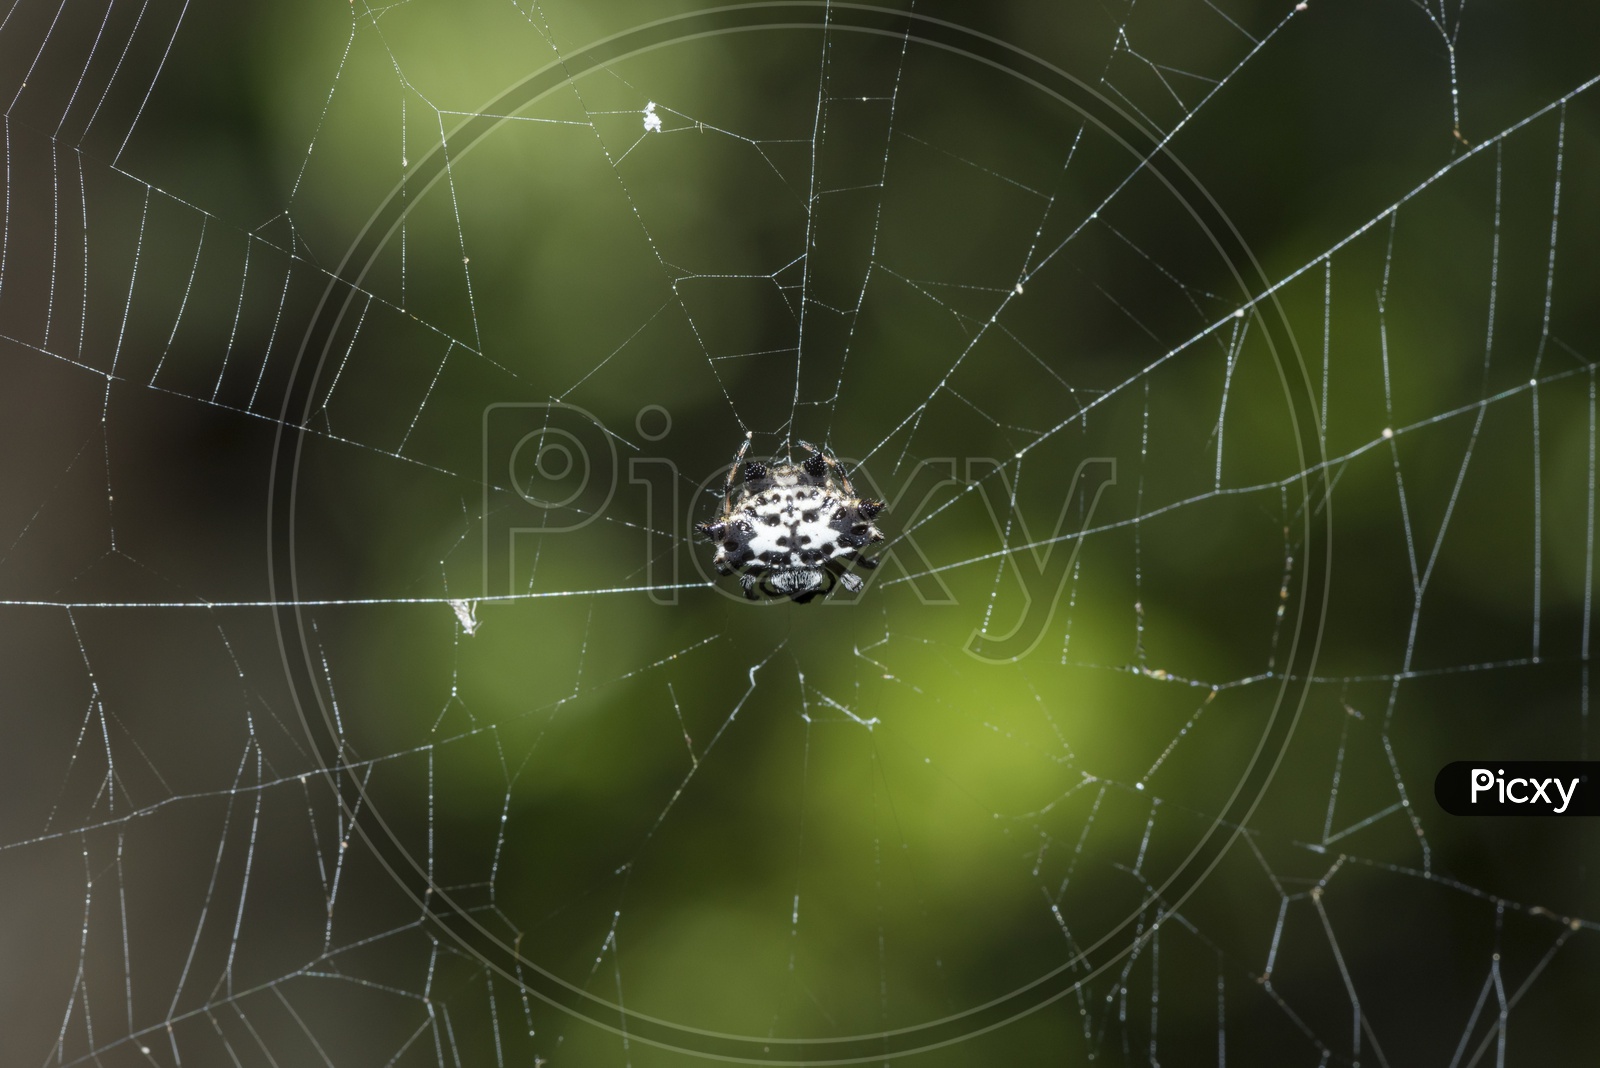 Spider In a Cobweb